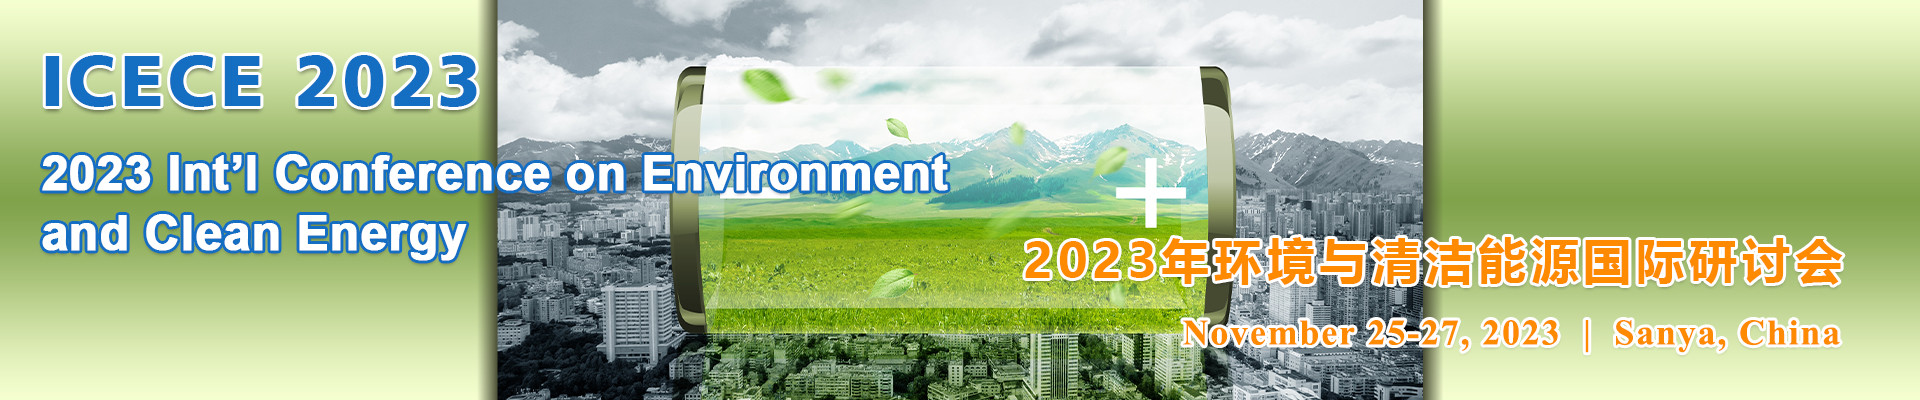 2023年環境與清潔能源國際研討會 (ICECE 2023)?